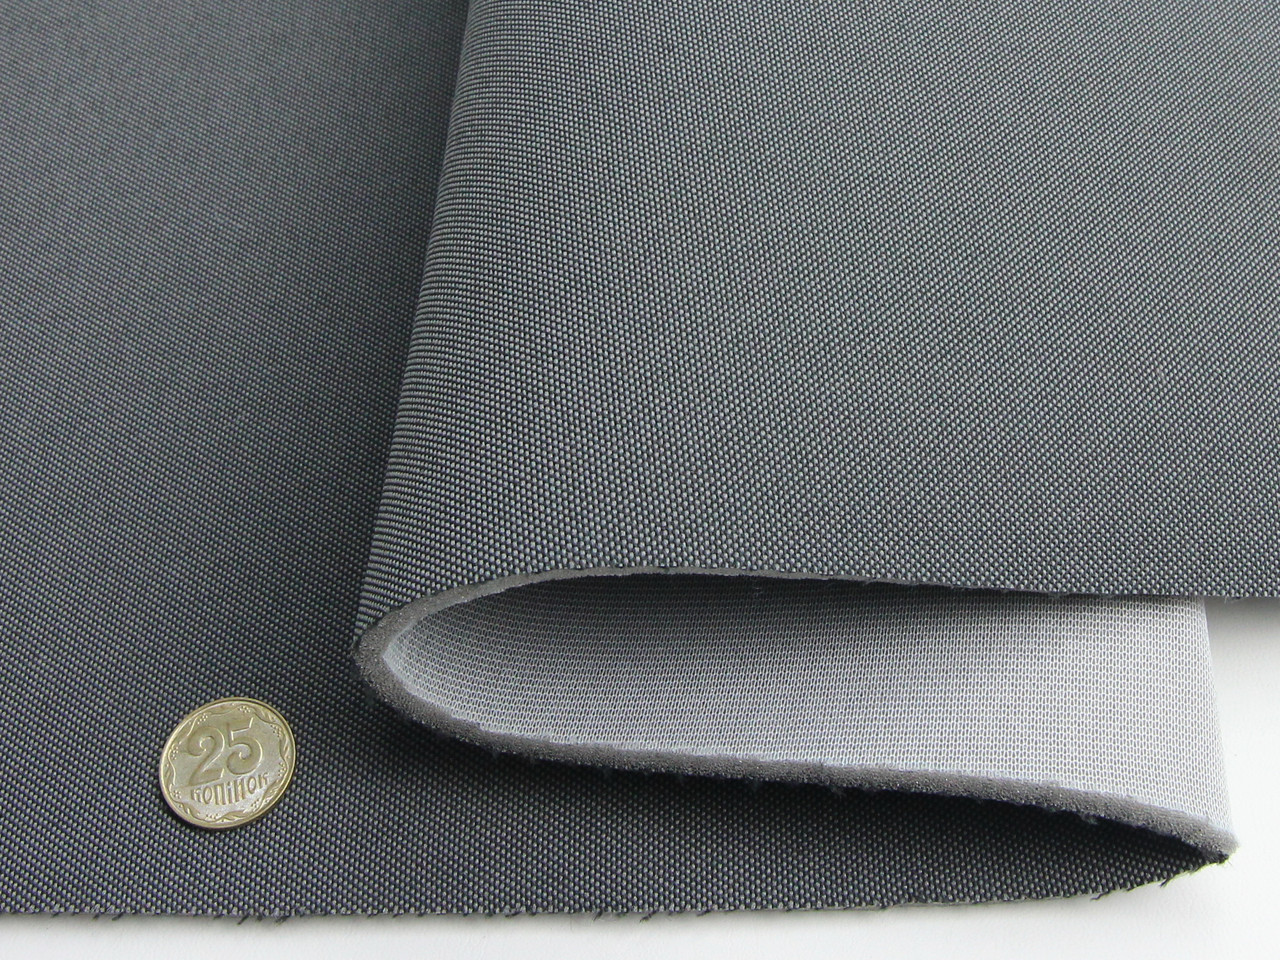 Авто ткань оригинальная сидений (темно-серый), основа поролон и сетка, толщина 4мм, ширина 180см детальная фотка